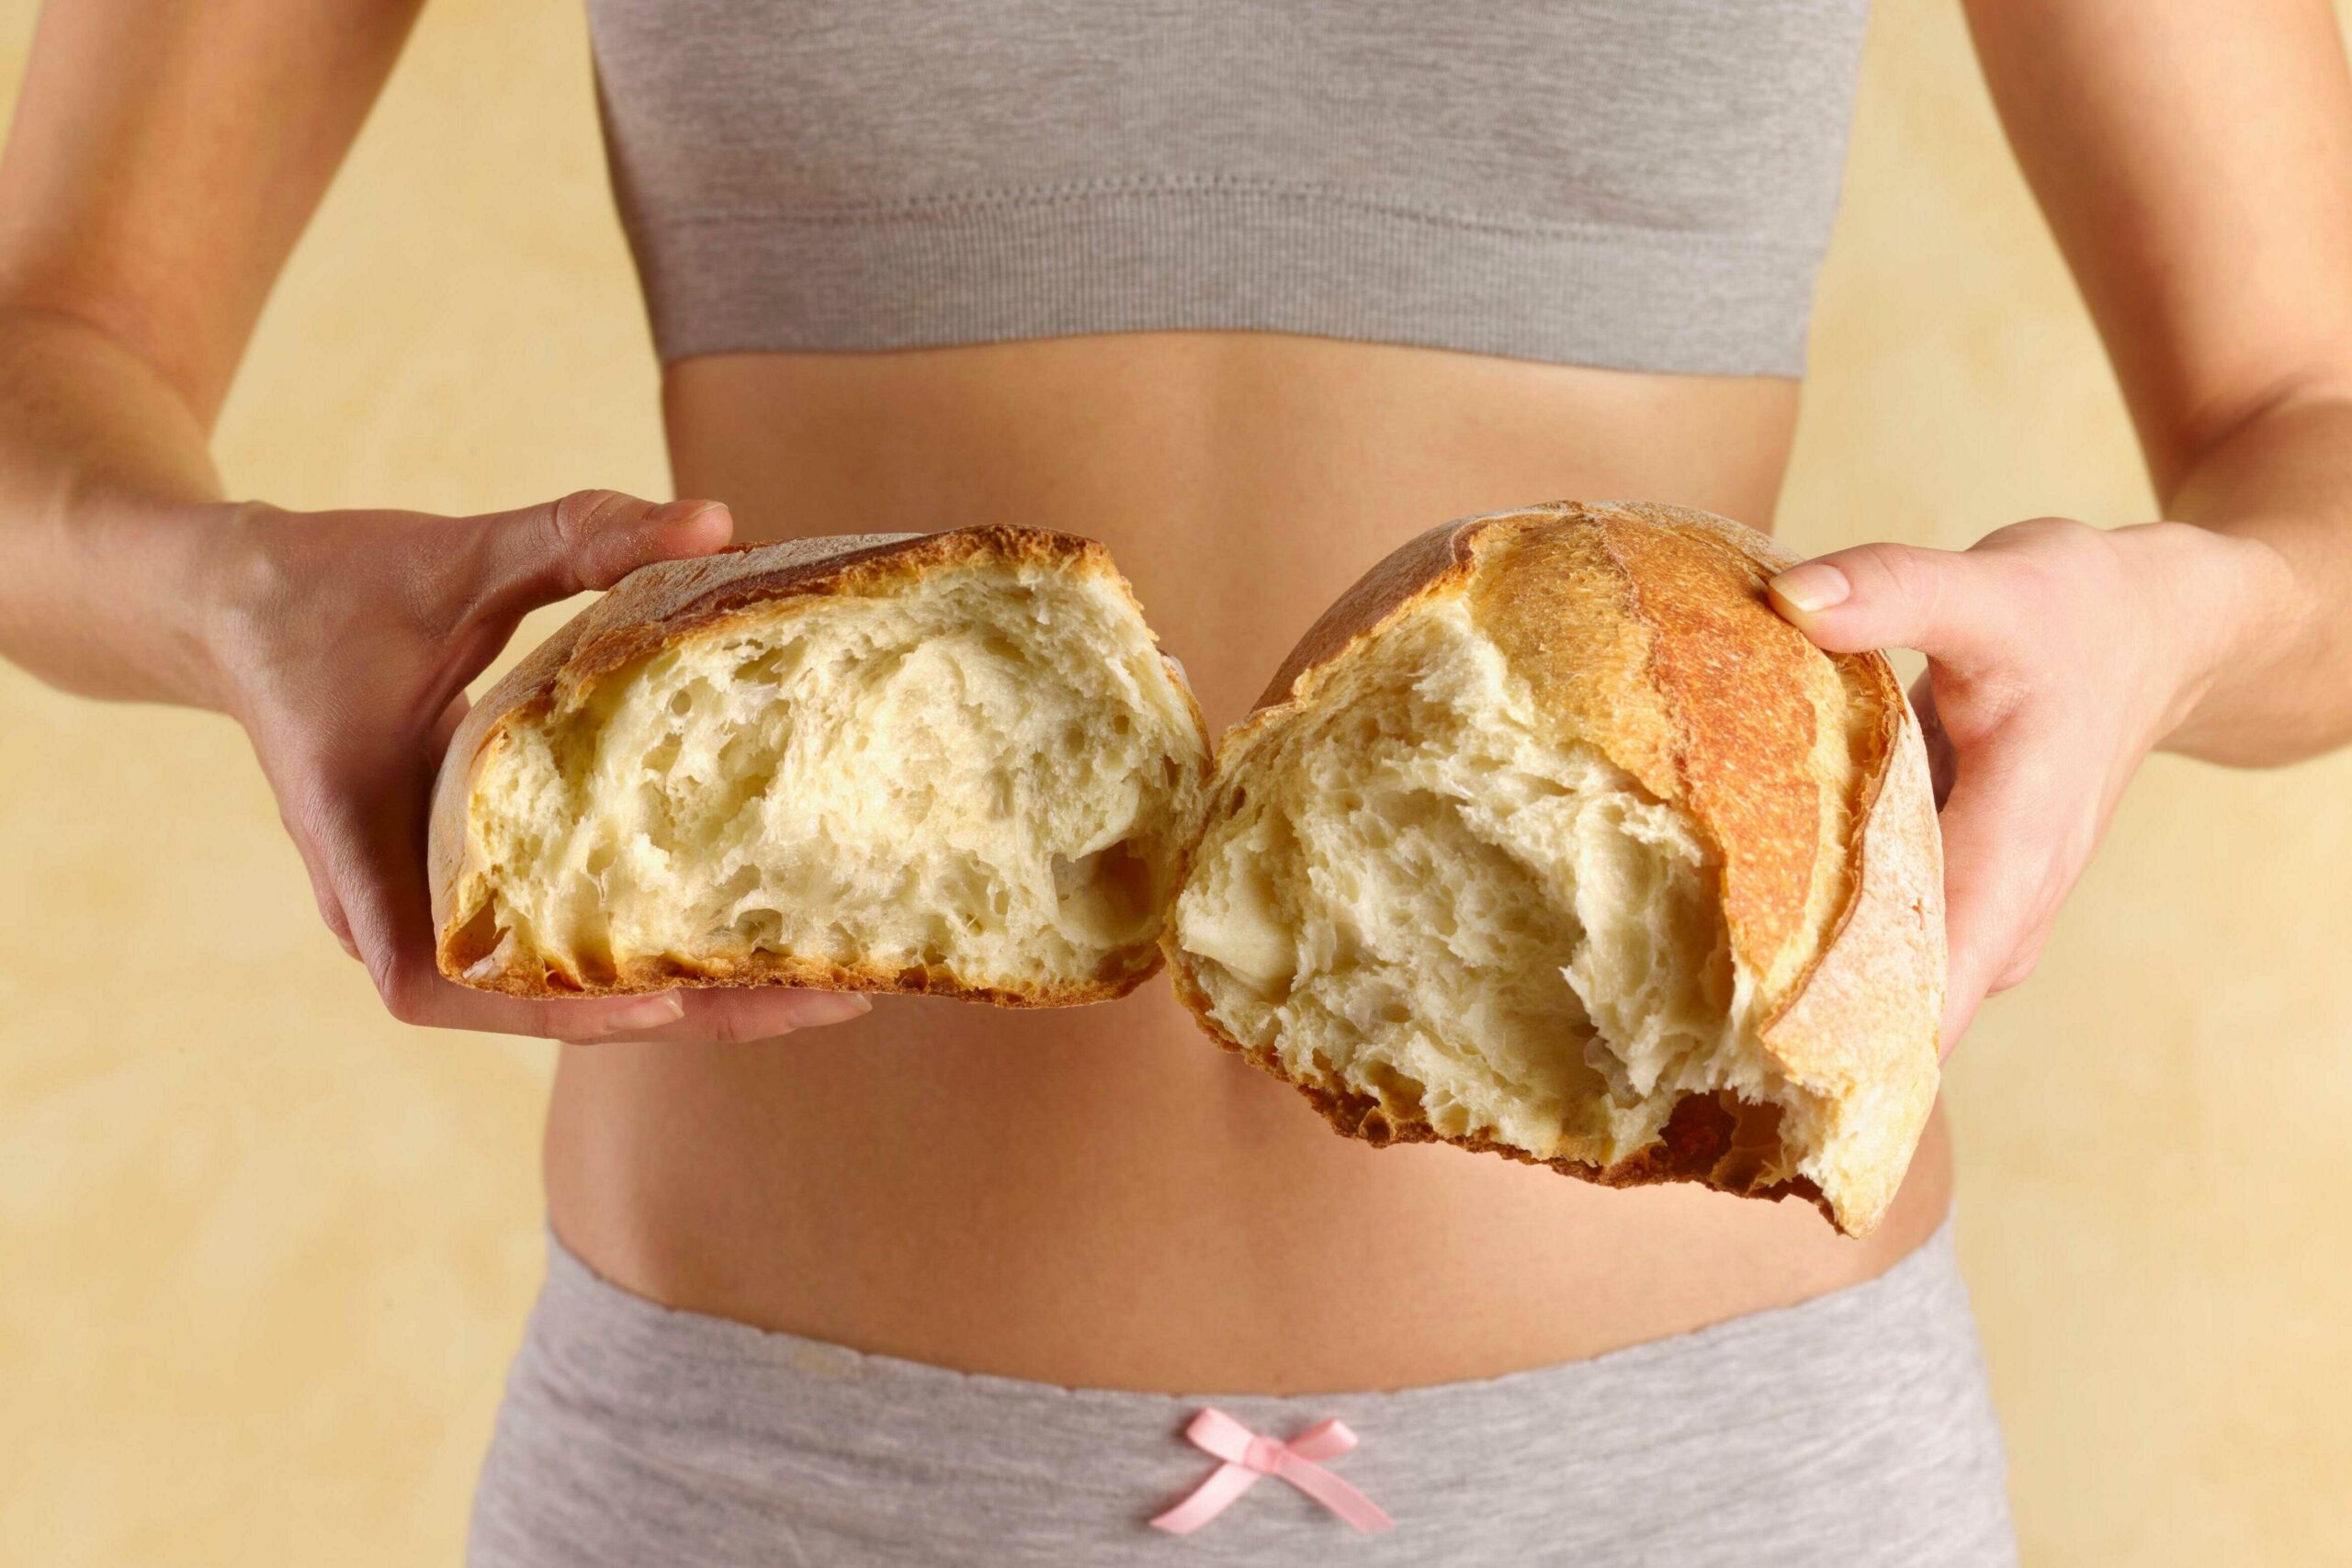 Bánh mì thực sự là thực phẩm chứa ít calo hơn cơm, phở, bún.